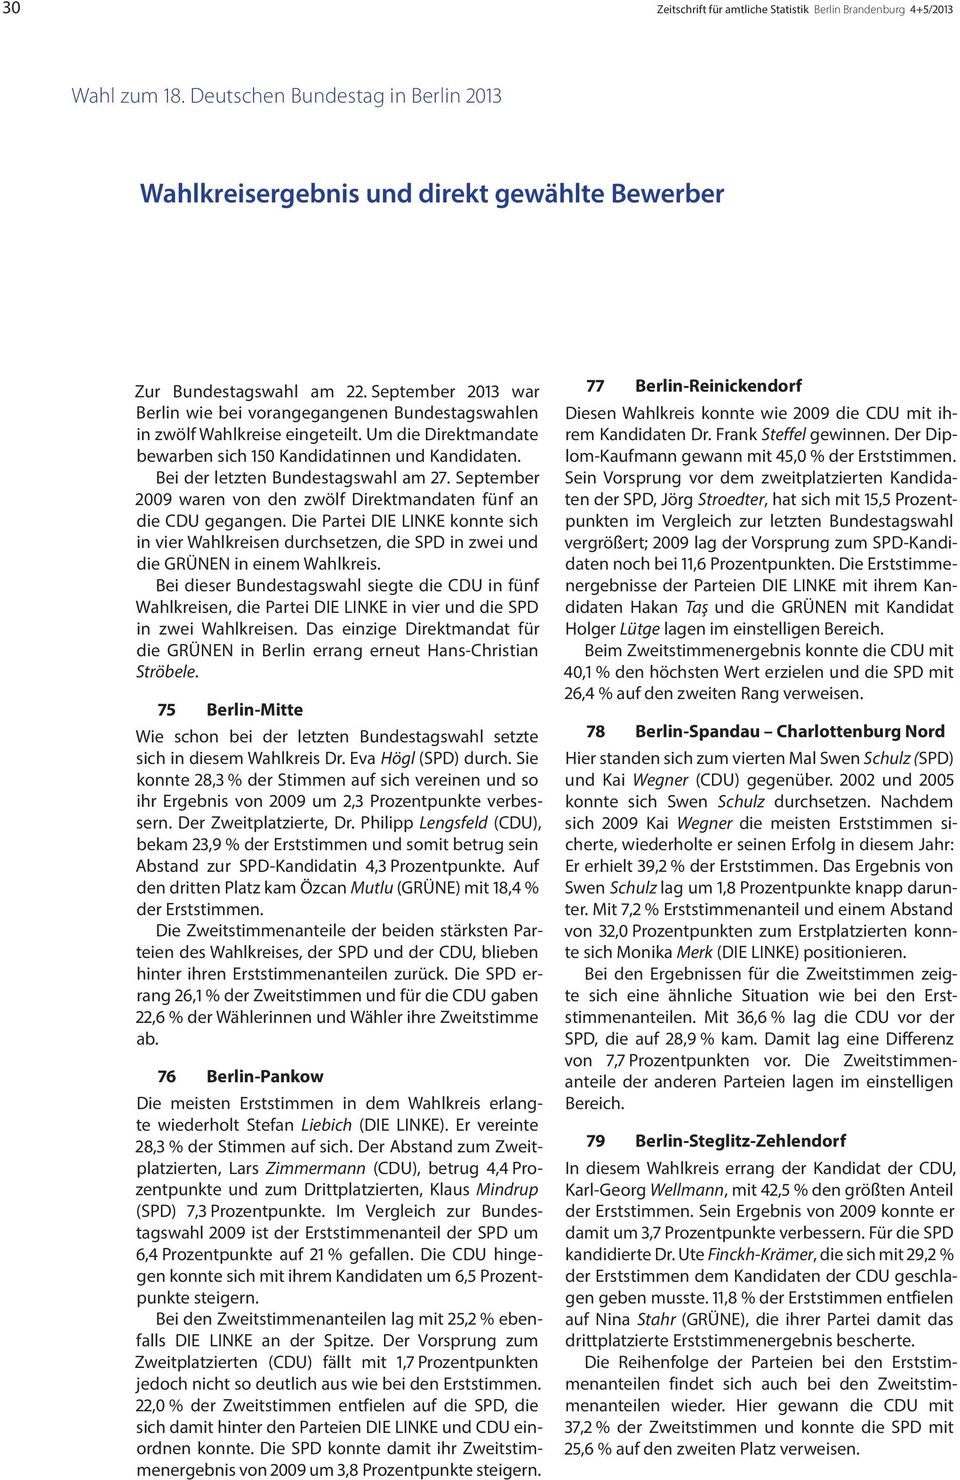 Bei der letzten Bundestagswahl am 27. September 2009 waren von den zwölf Direktmandaten fünf an die CDU gegangen.